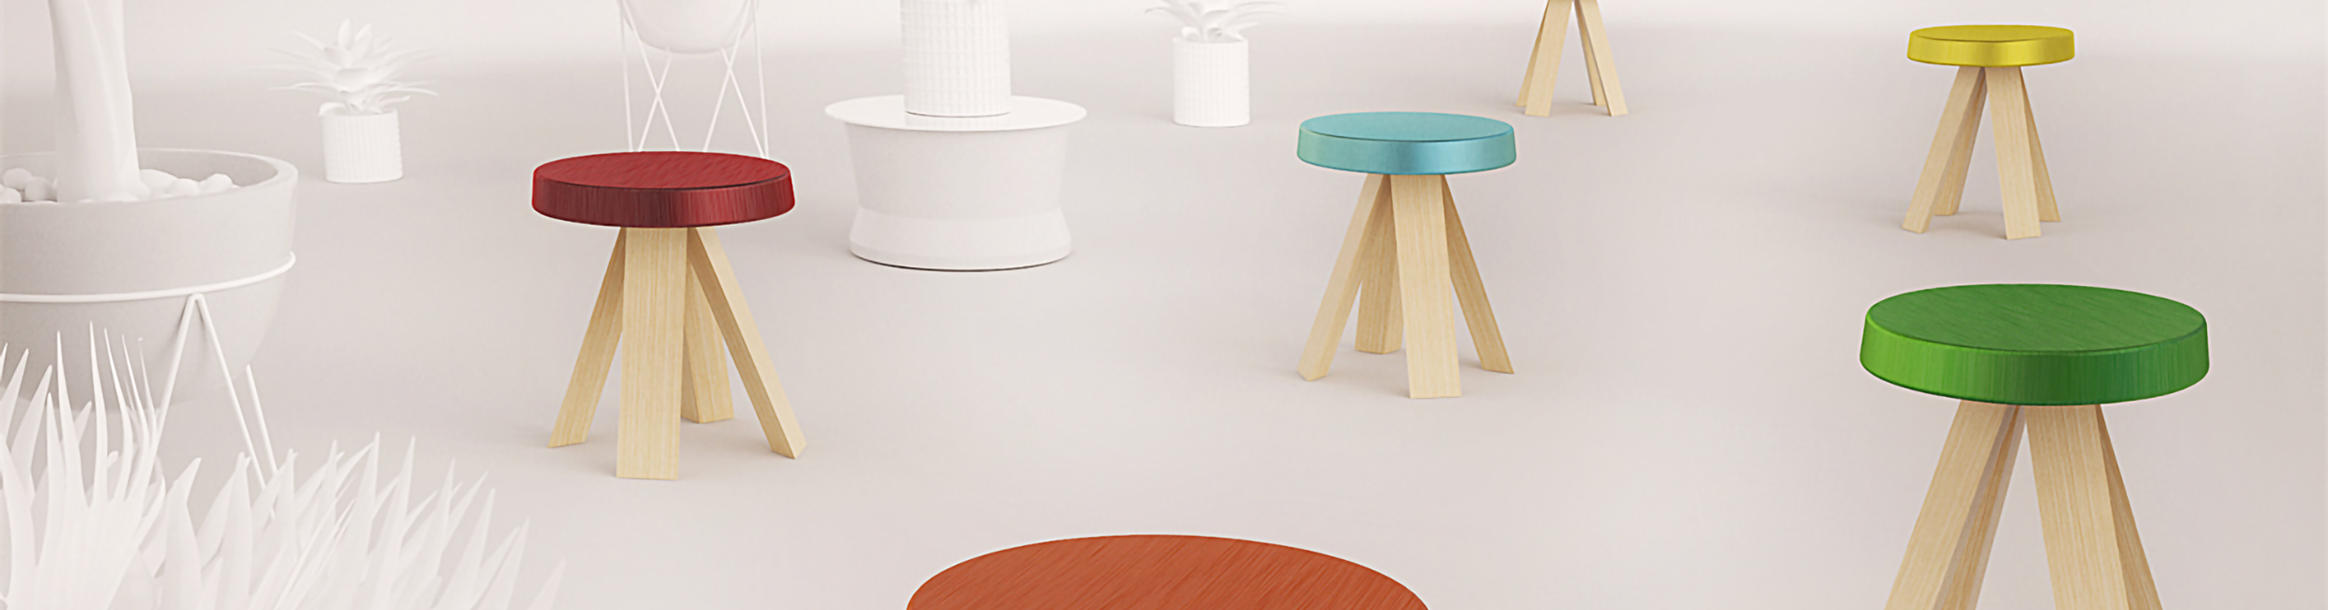 Imagen principal del proyecto Asterisk stool